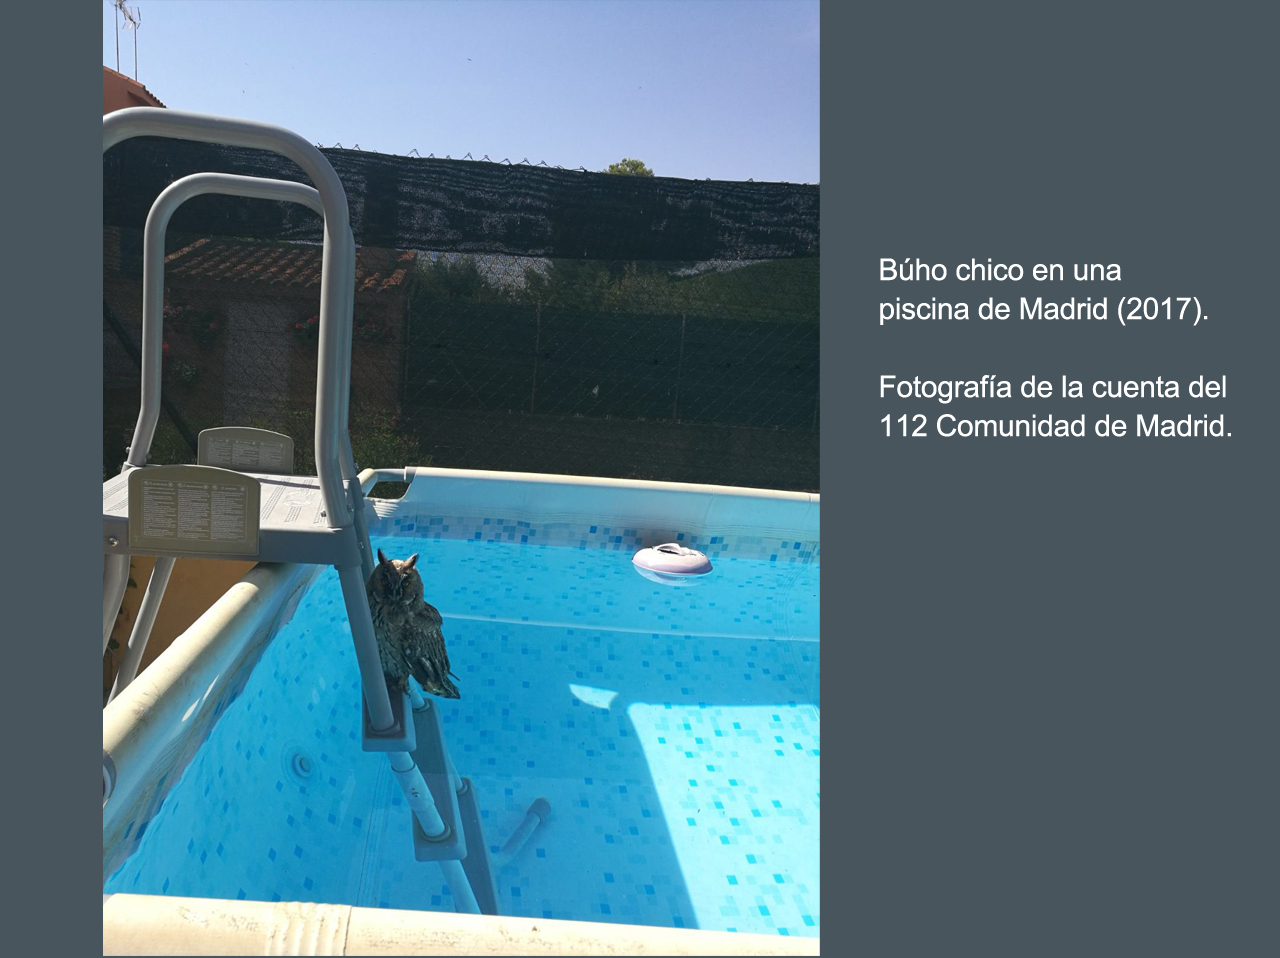 Búho chico, en una piscina privada de Madrid. Imagen: 112 Comunidad de Madrid